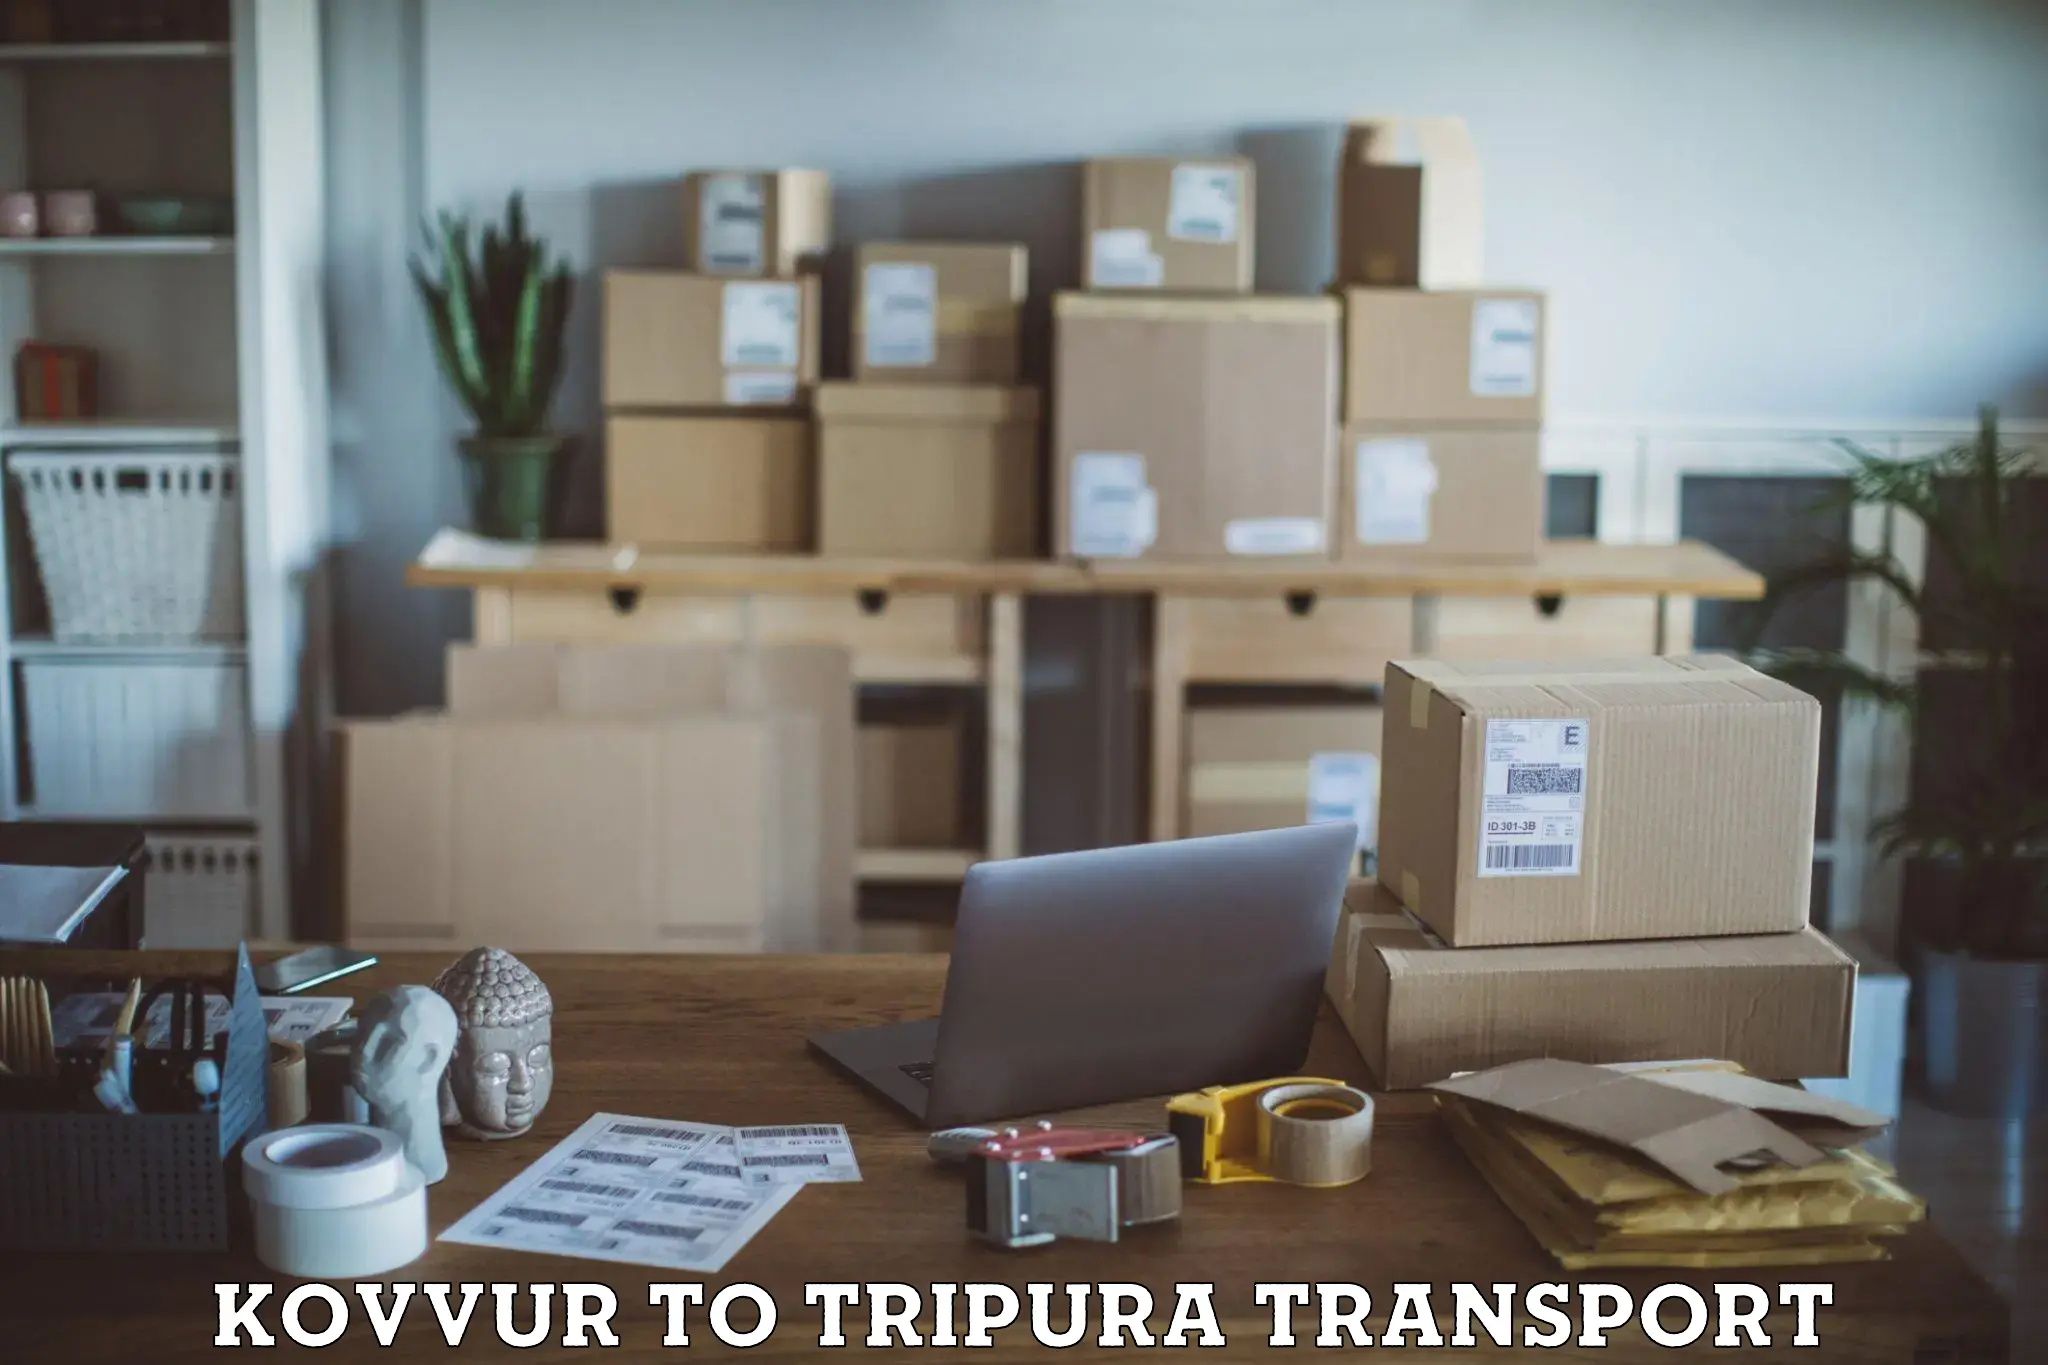 Cargo train transport services Kovvur to IIIT Agartala